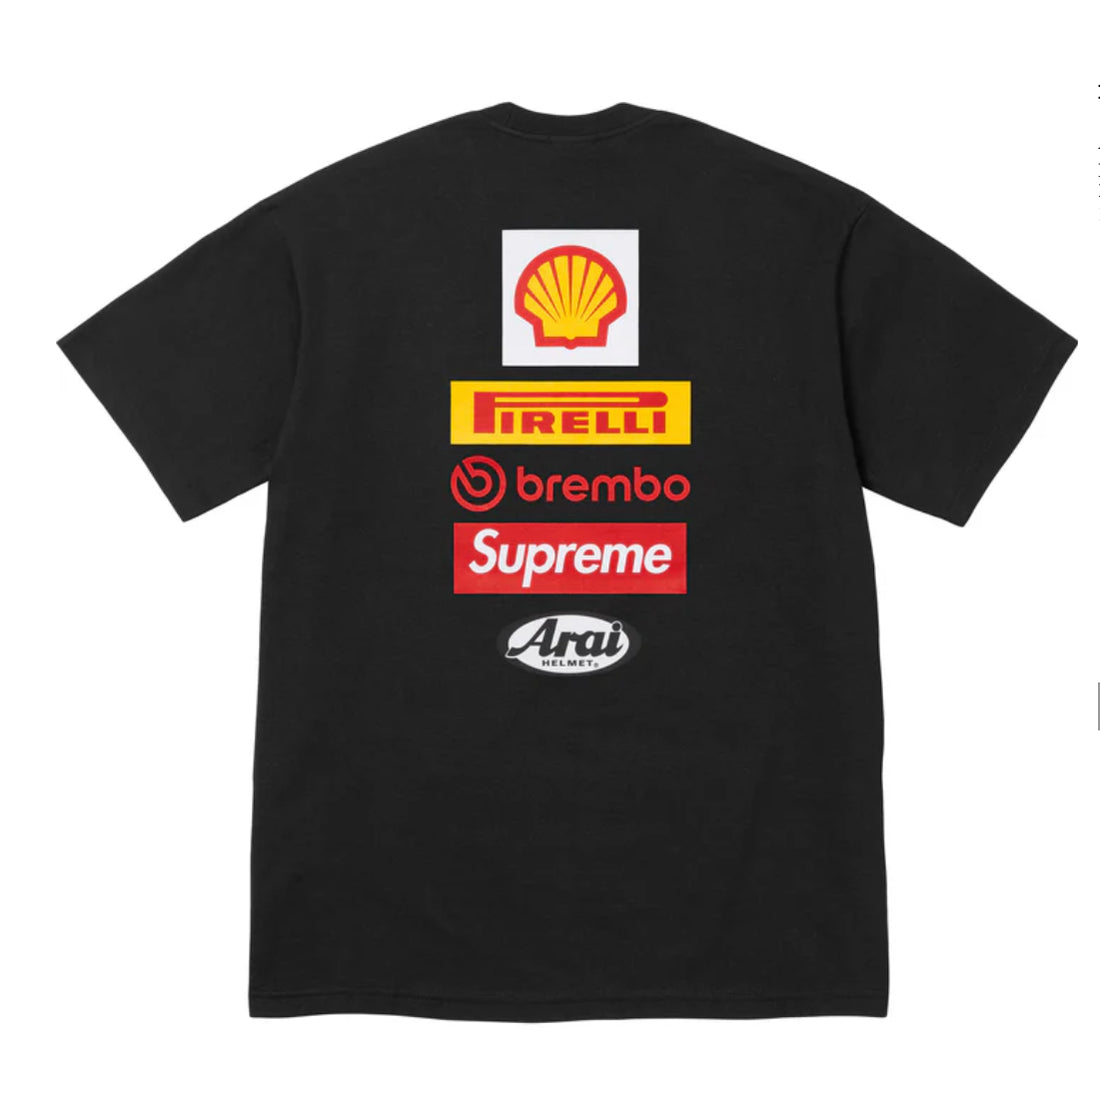 Supreme x Ducati “Logos” Tee Black